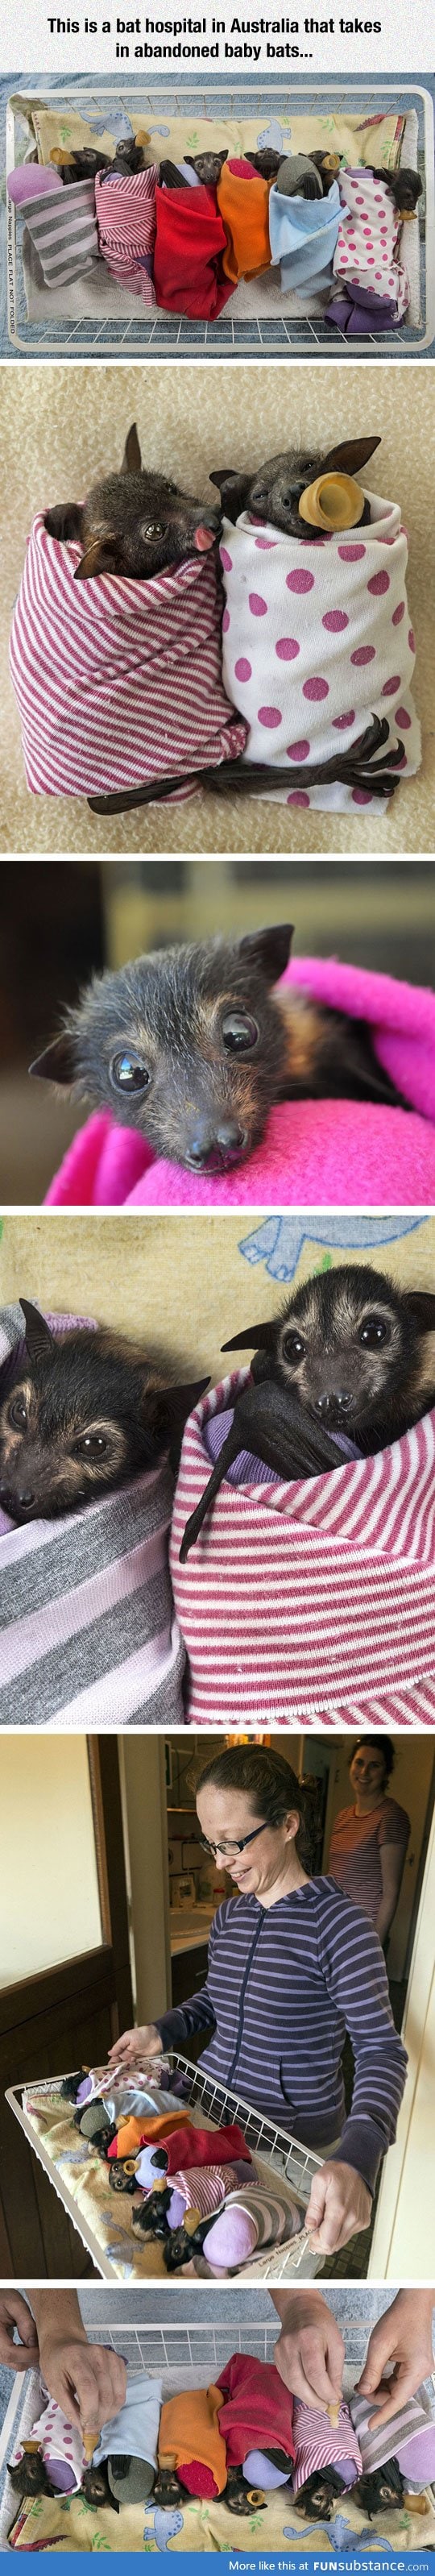 Adorable little bats